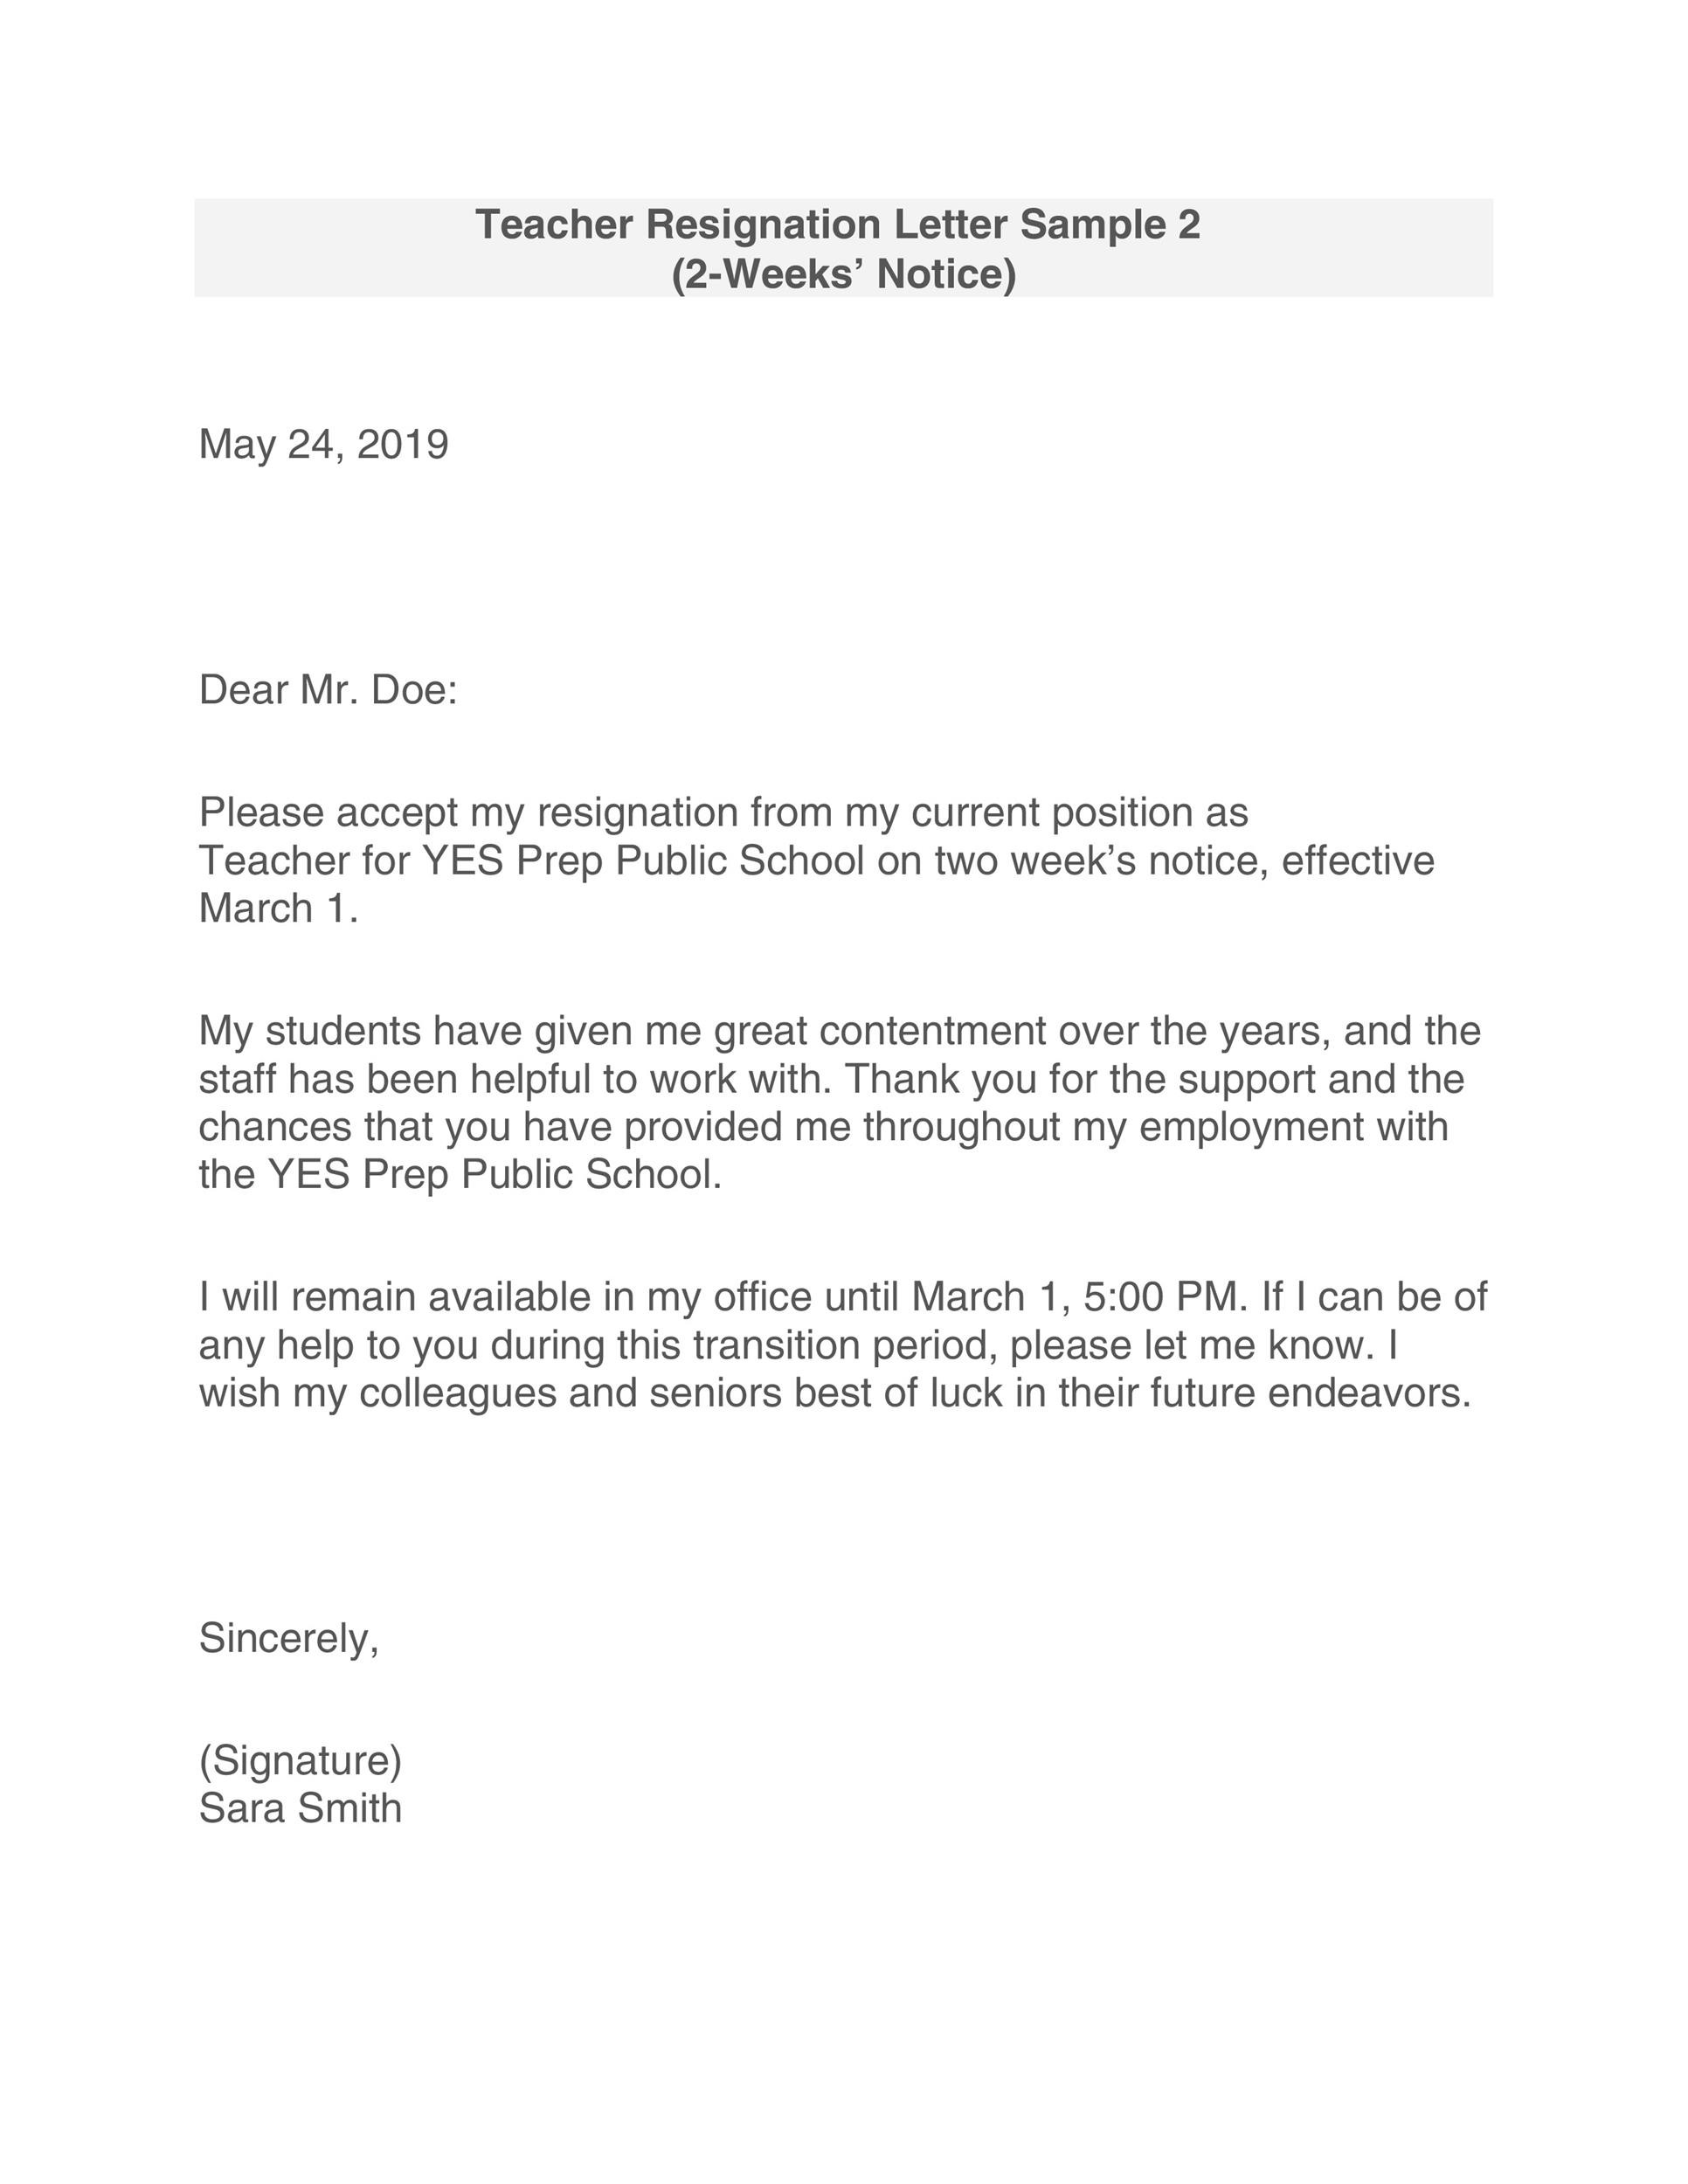 Free teacher resignation letter 26